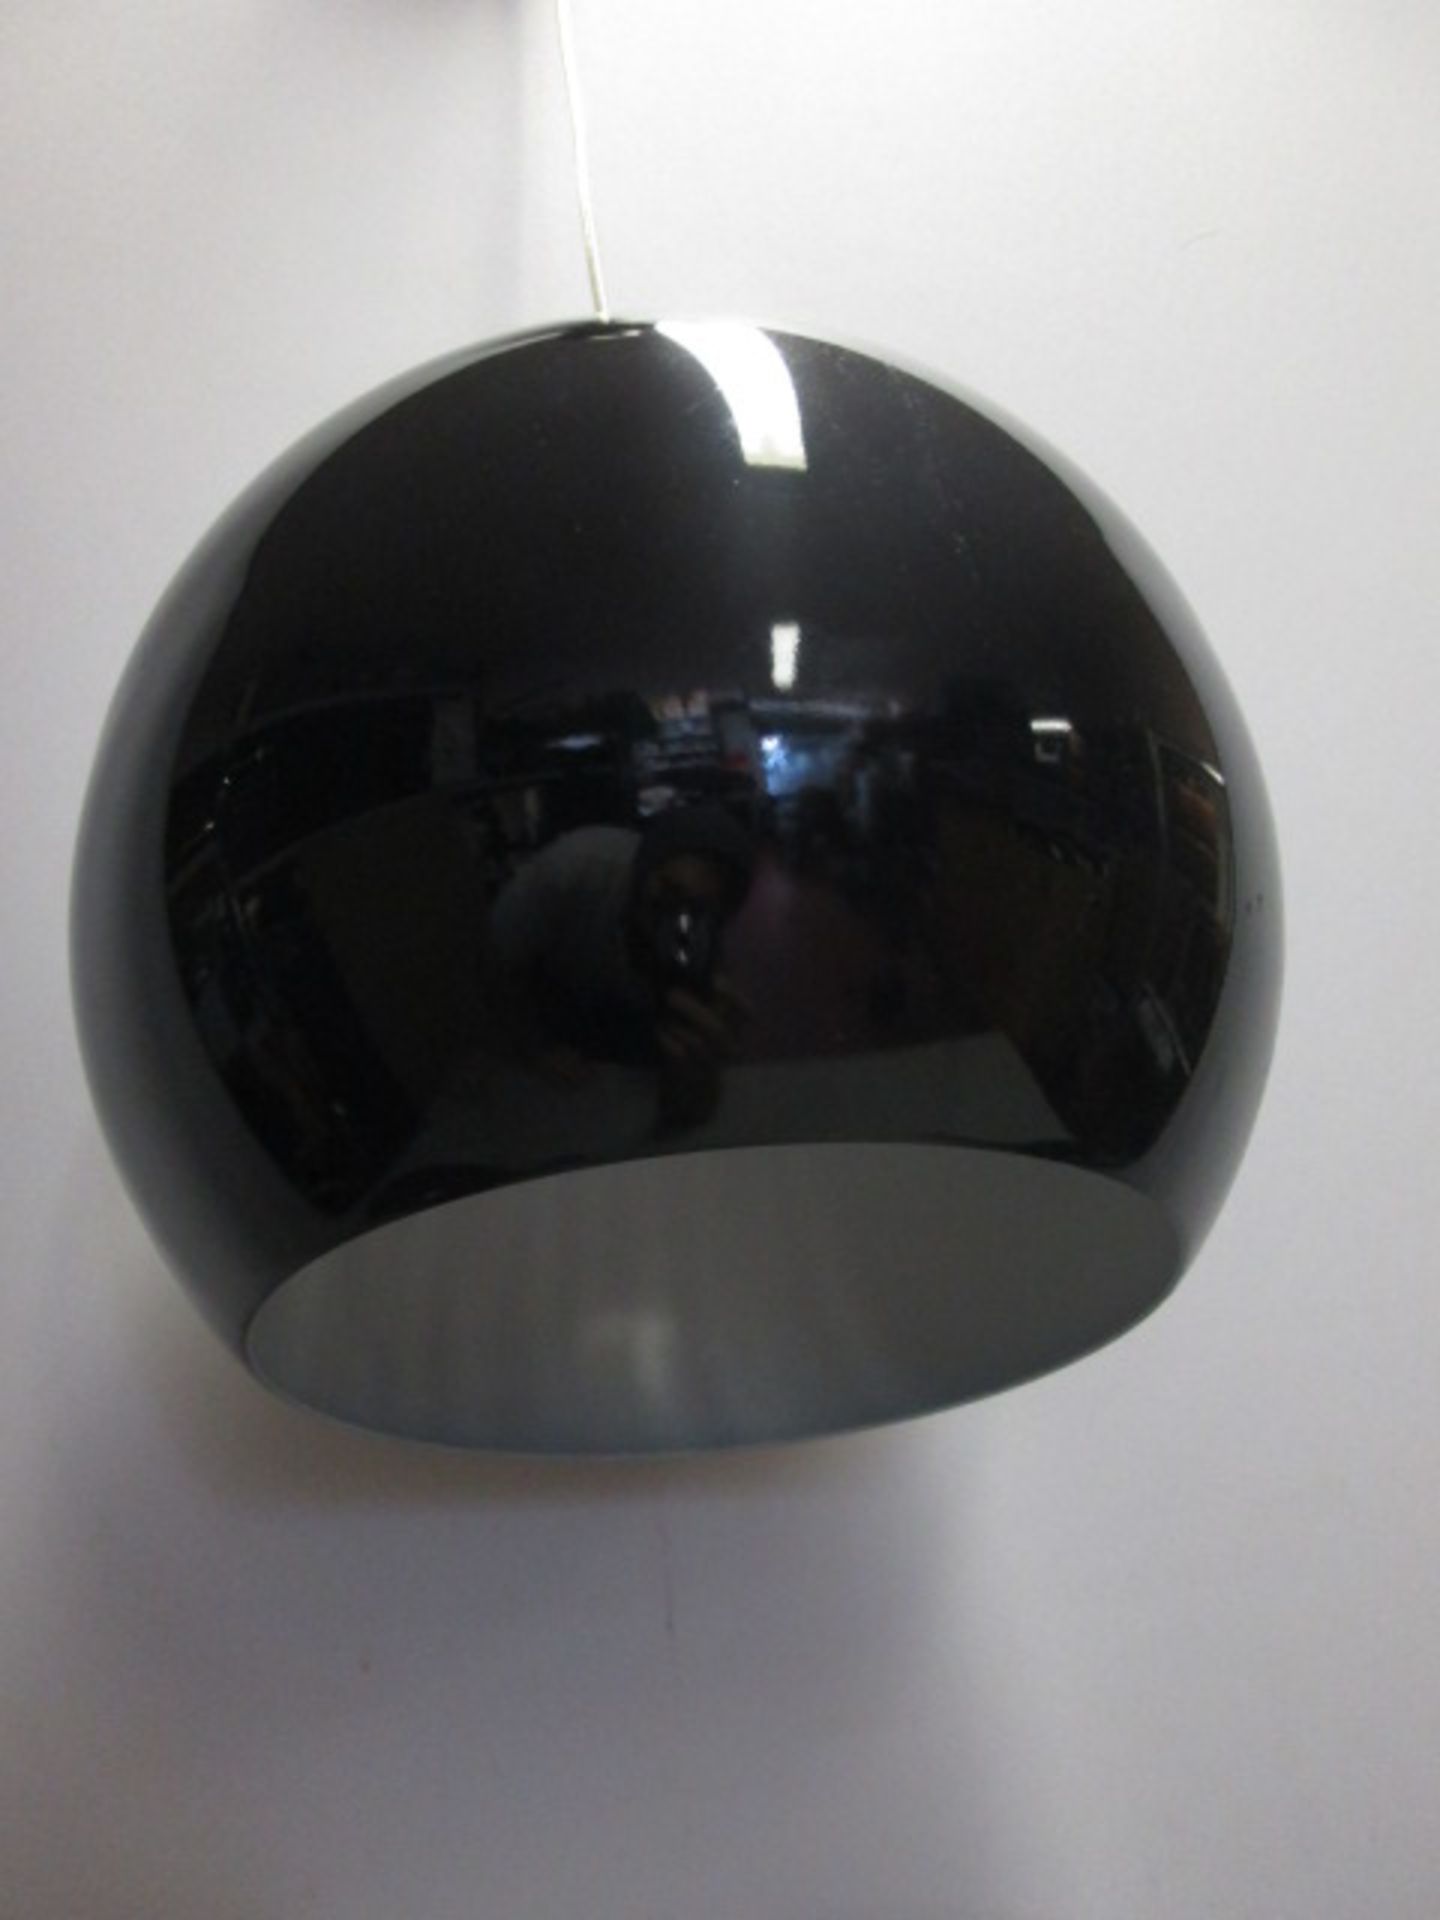 15 x Leitmotive Pendant Lamp Ceiling Lights, Aluminium, Black. Size Diameter 25cm - Image 2 of 5